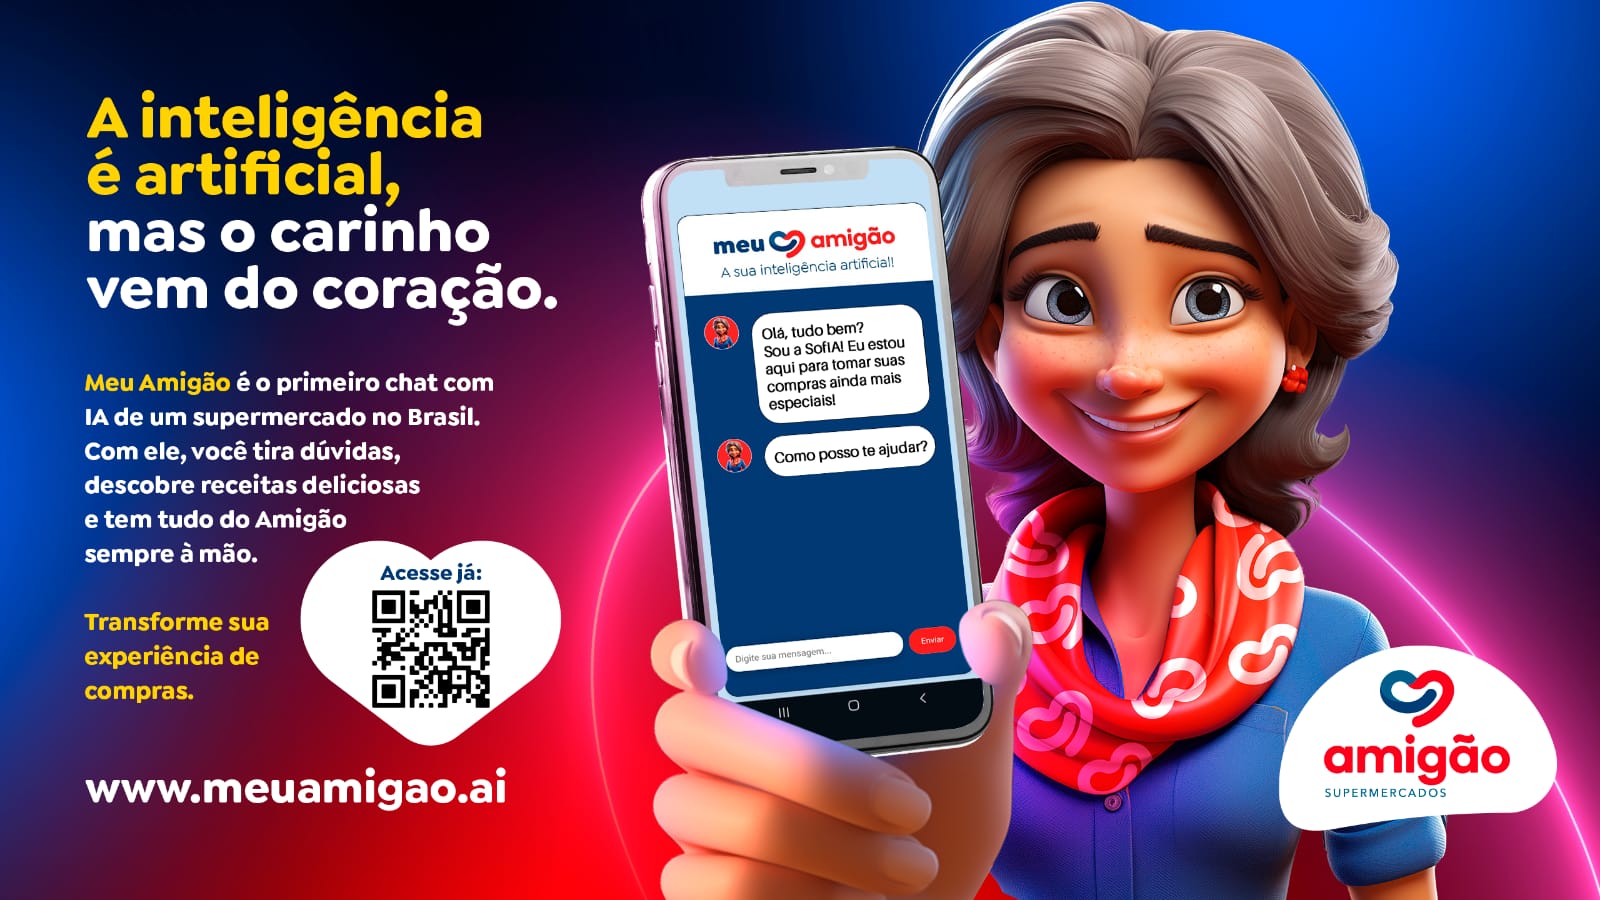 Featured image for “Amigão Supermercados inova ao usar IA para se comunicar com clientes”